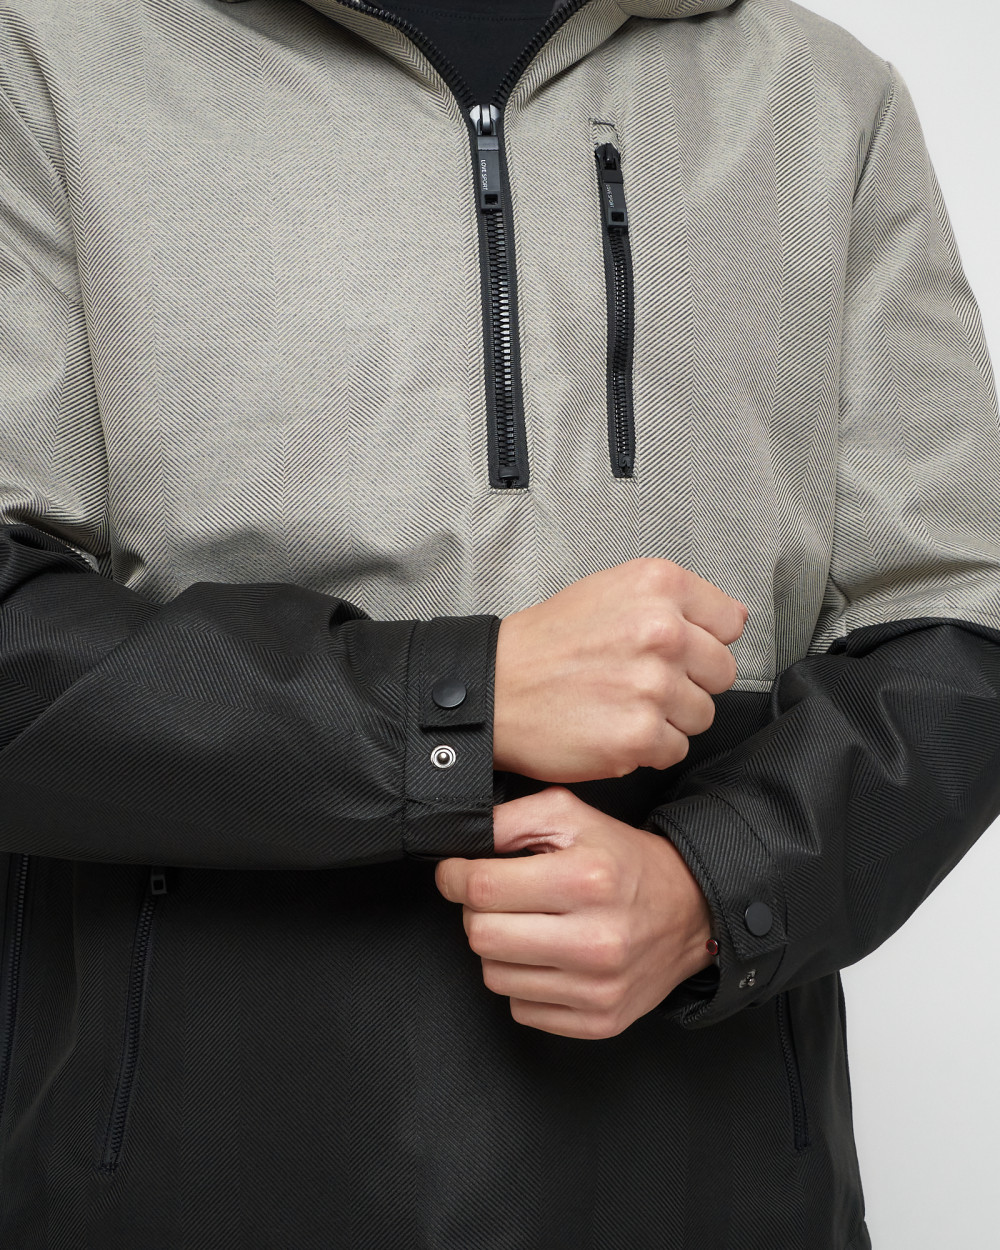 Купить куртку анорак спортивную мужскую оптом от производителя недорого в Москве 3307B 1